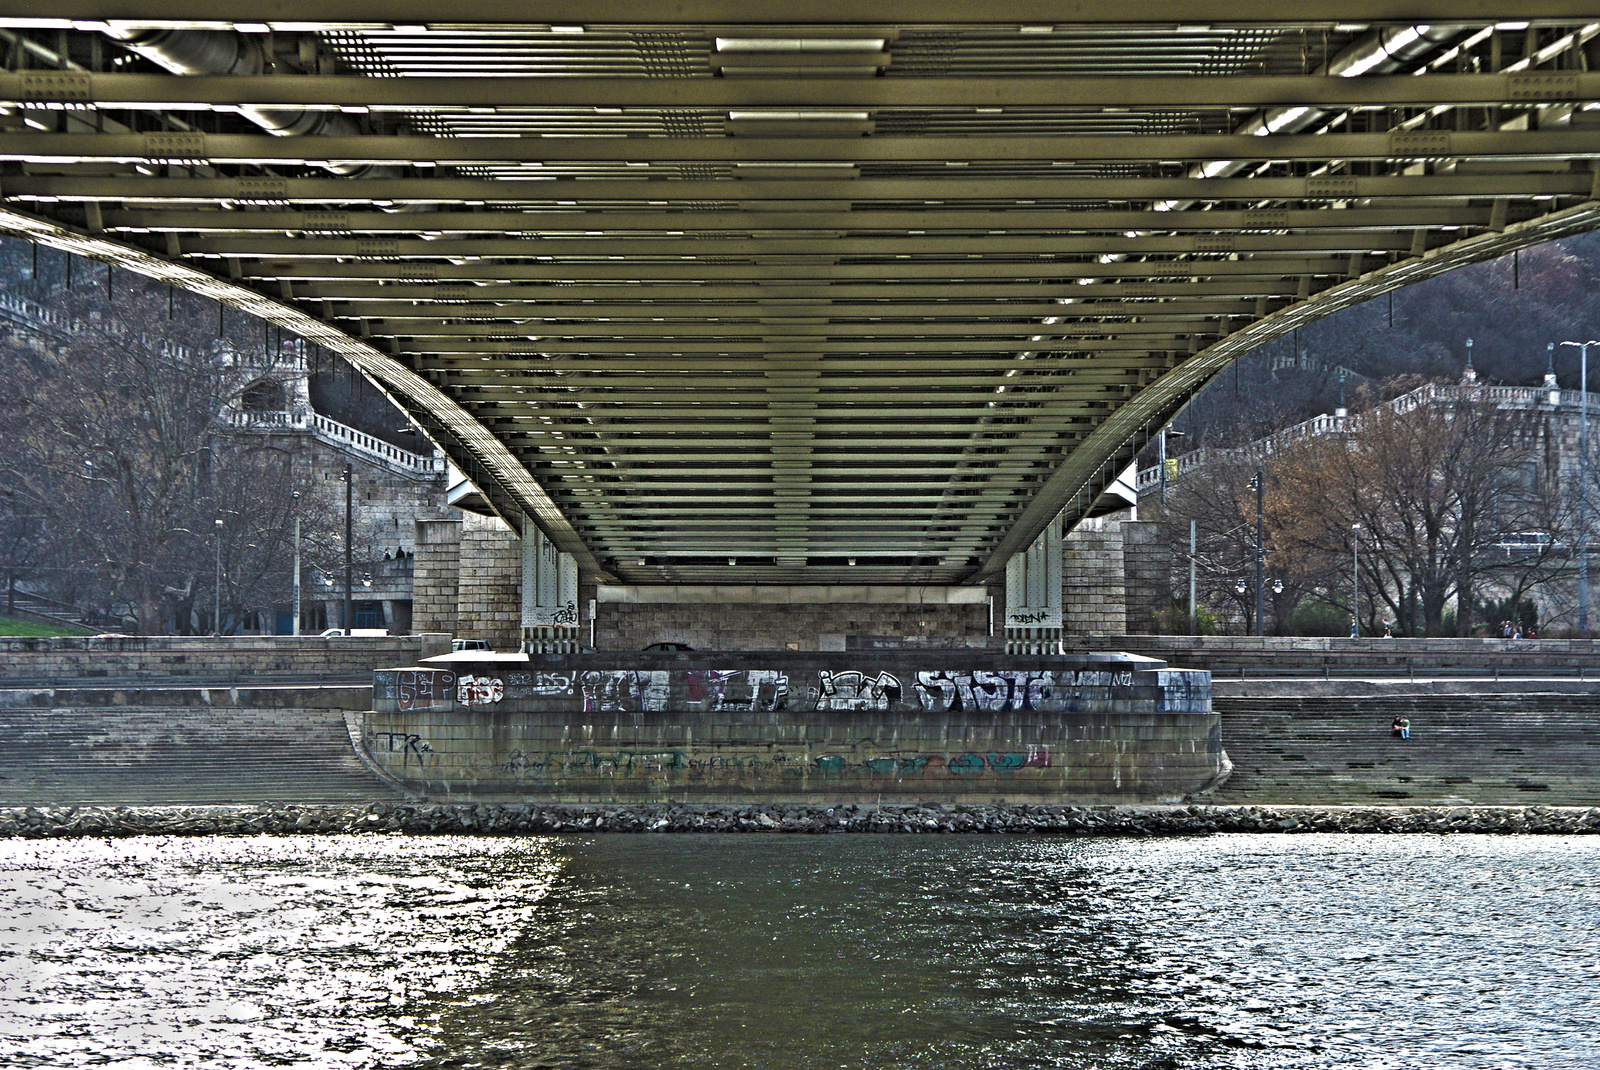 Erzsébet híd, alulnézet (HDR)